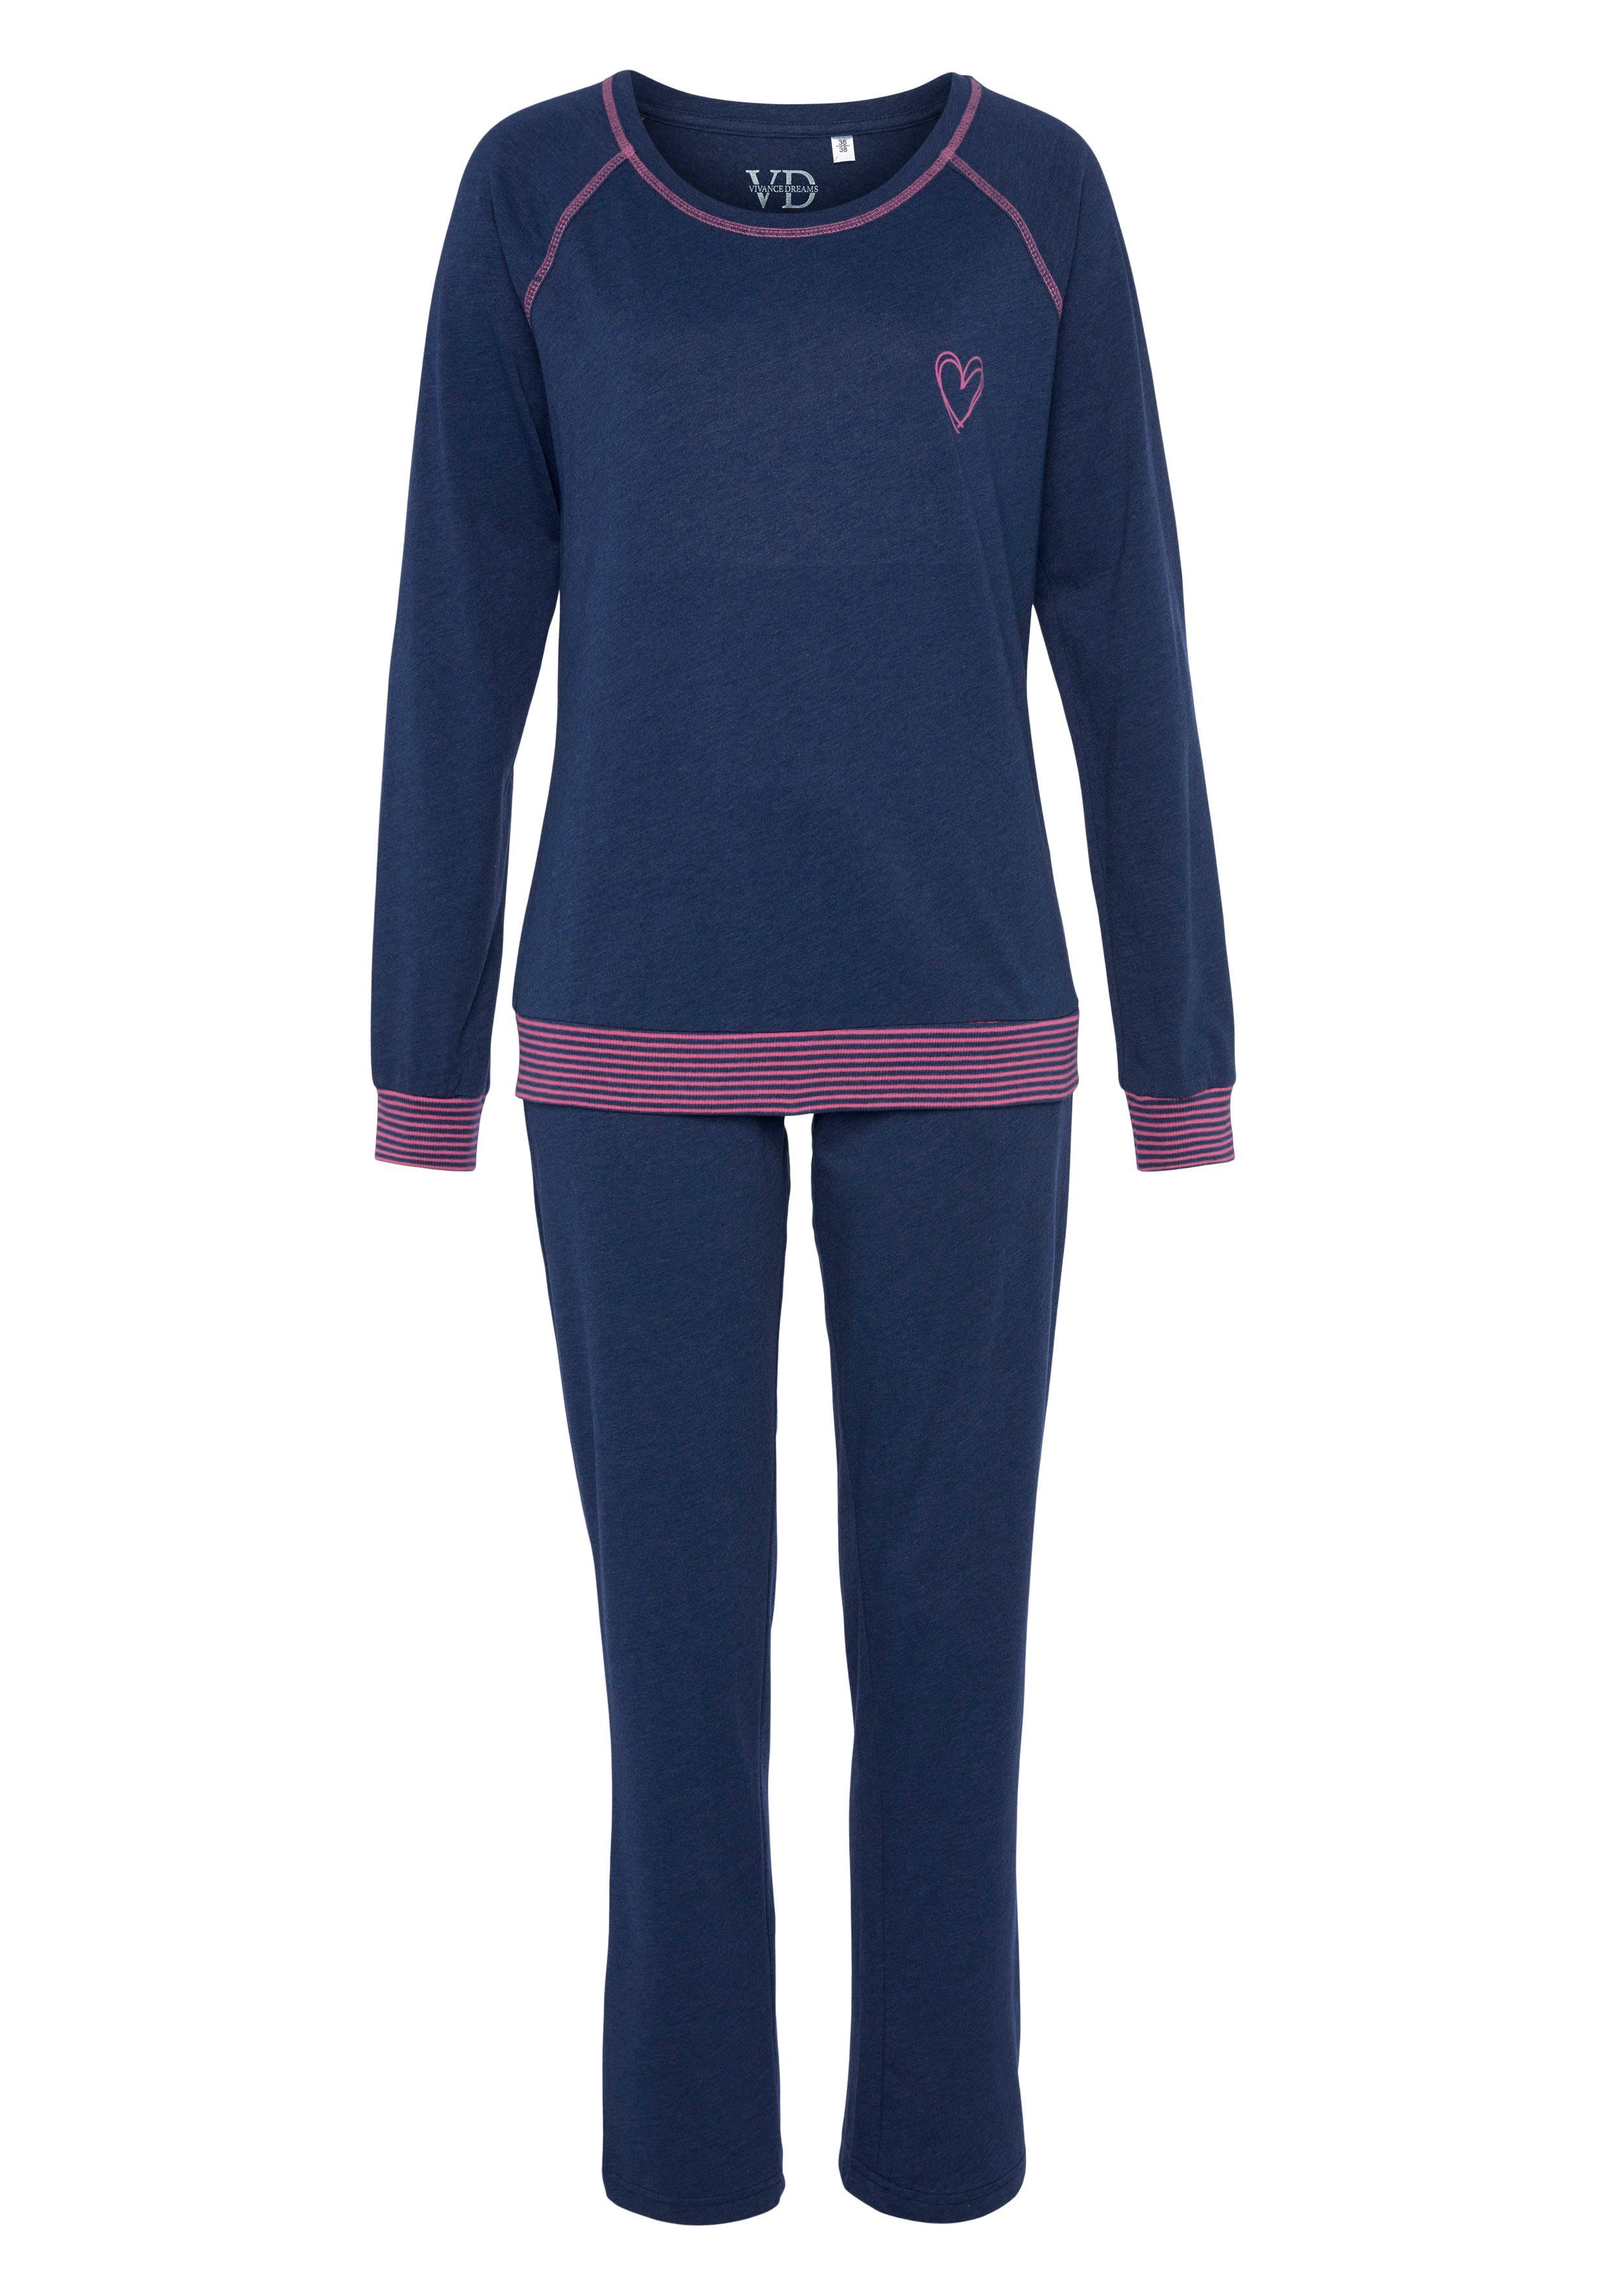 tlg) Pyjama Dreams Neonfarben in Flatlock-Nähten jeansblau/neon-pink dekorativen Vivance mit (2